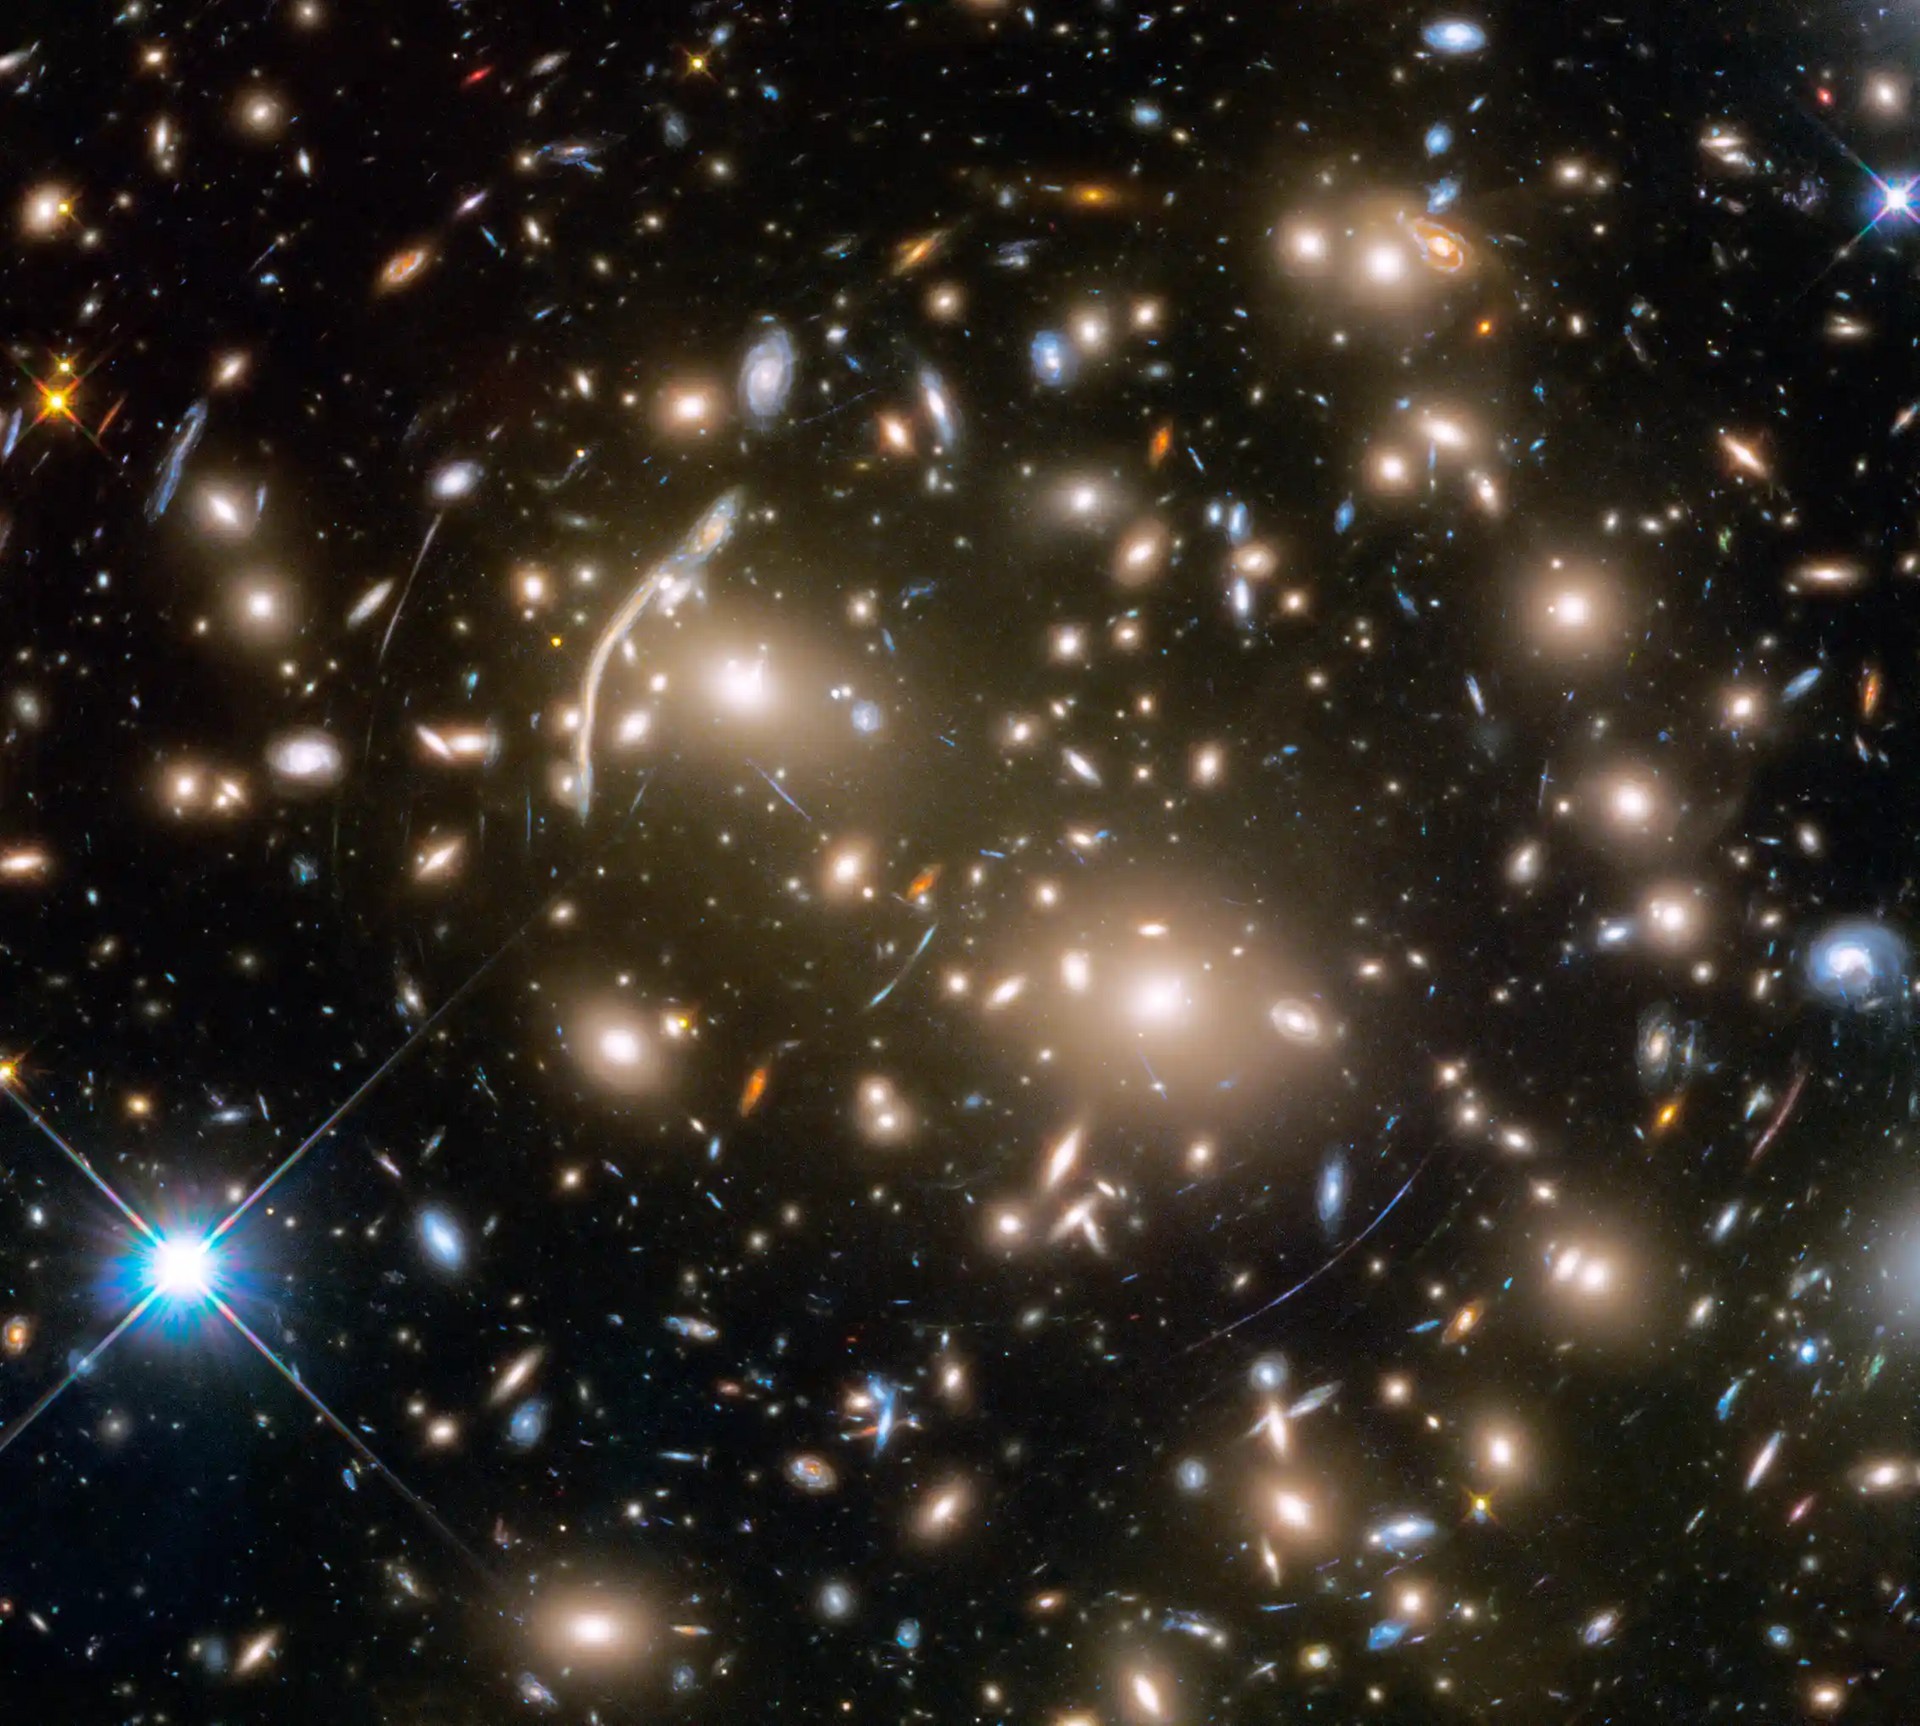 NASA divulga imagens feitas pelo telescópio James Webb e fotografia inédita  do Universo - TudoCelular.com